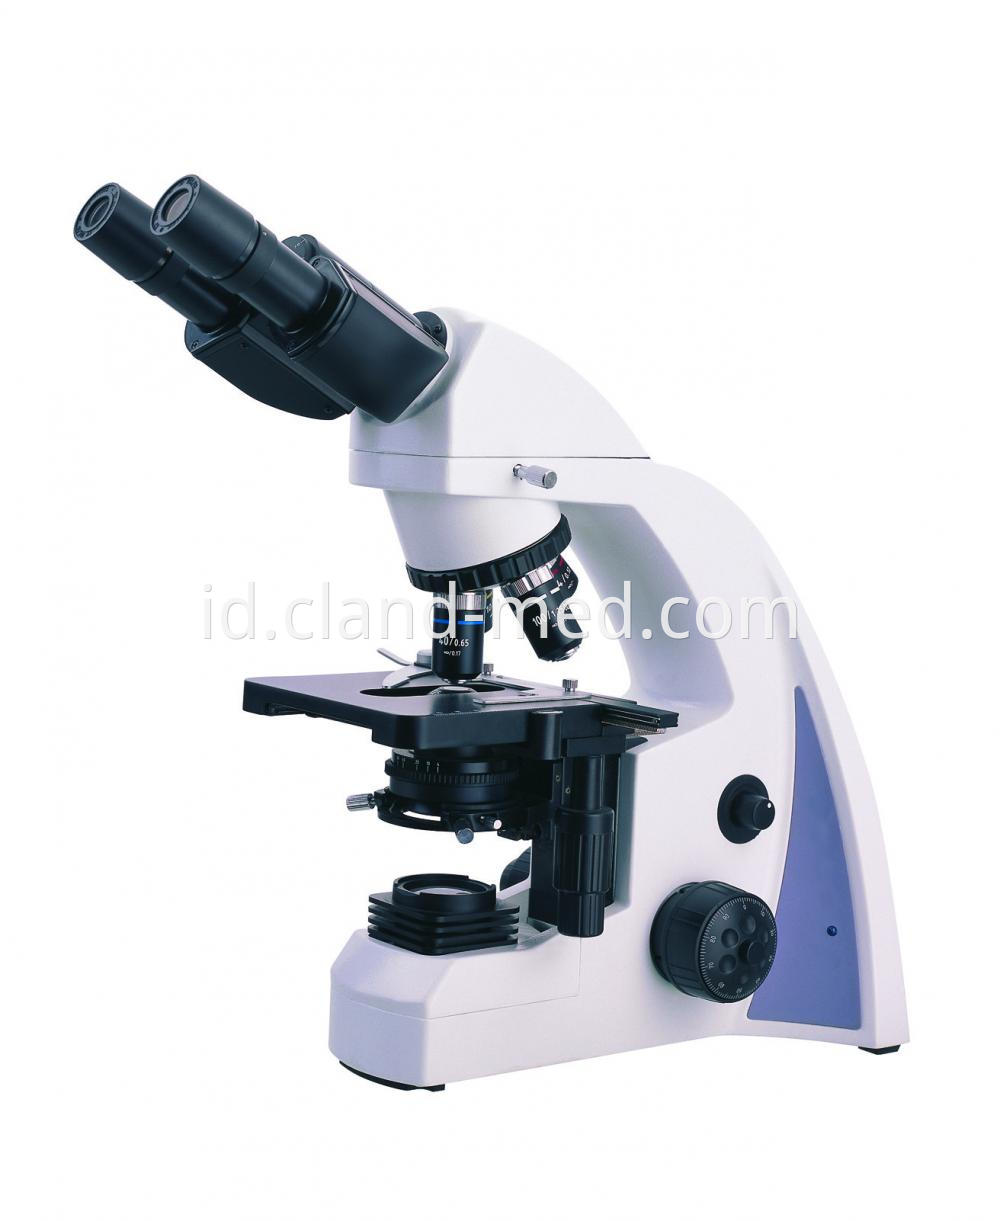 N 300m Biological Microscope